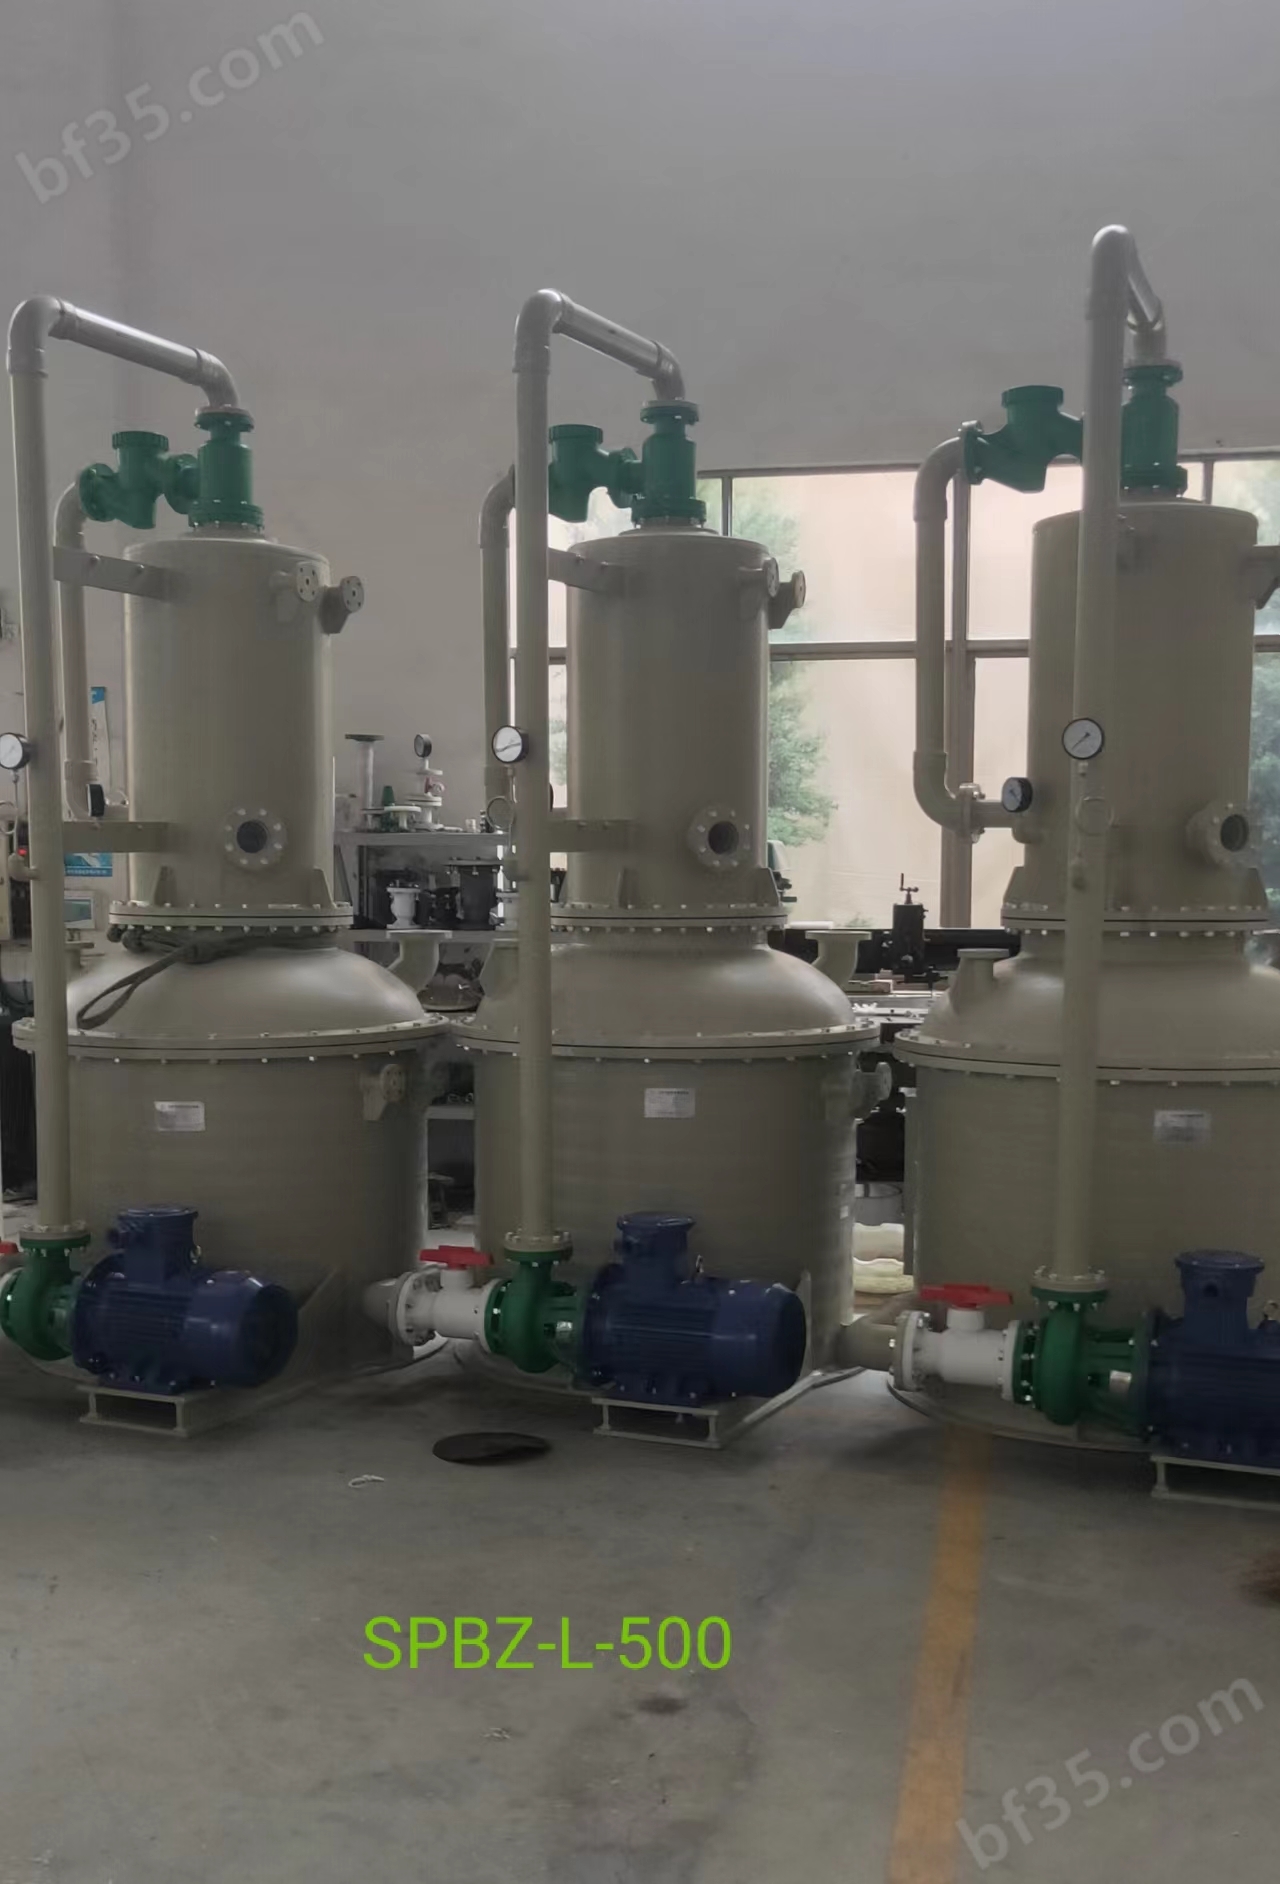 立式环保型水喷射真空泵机组多少钱